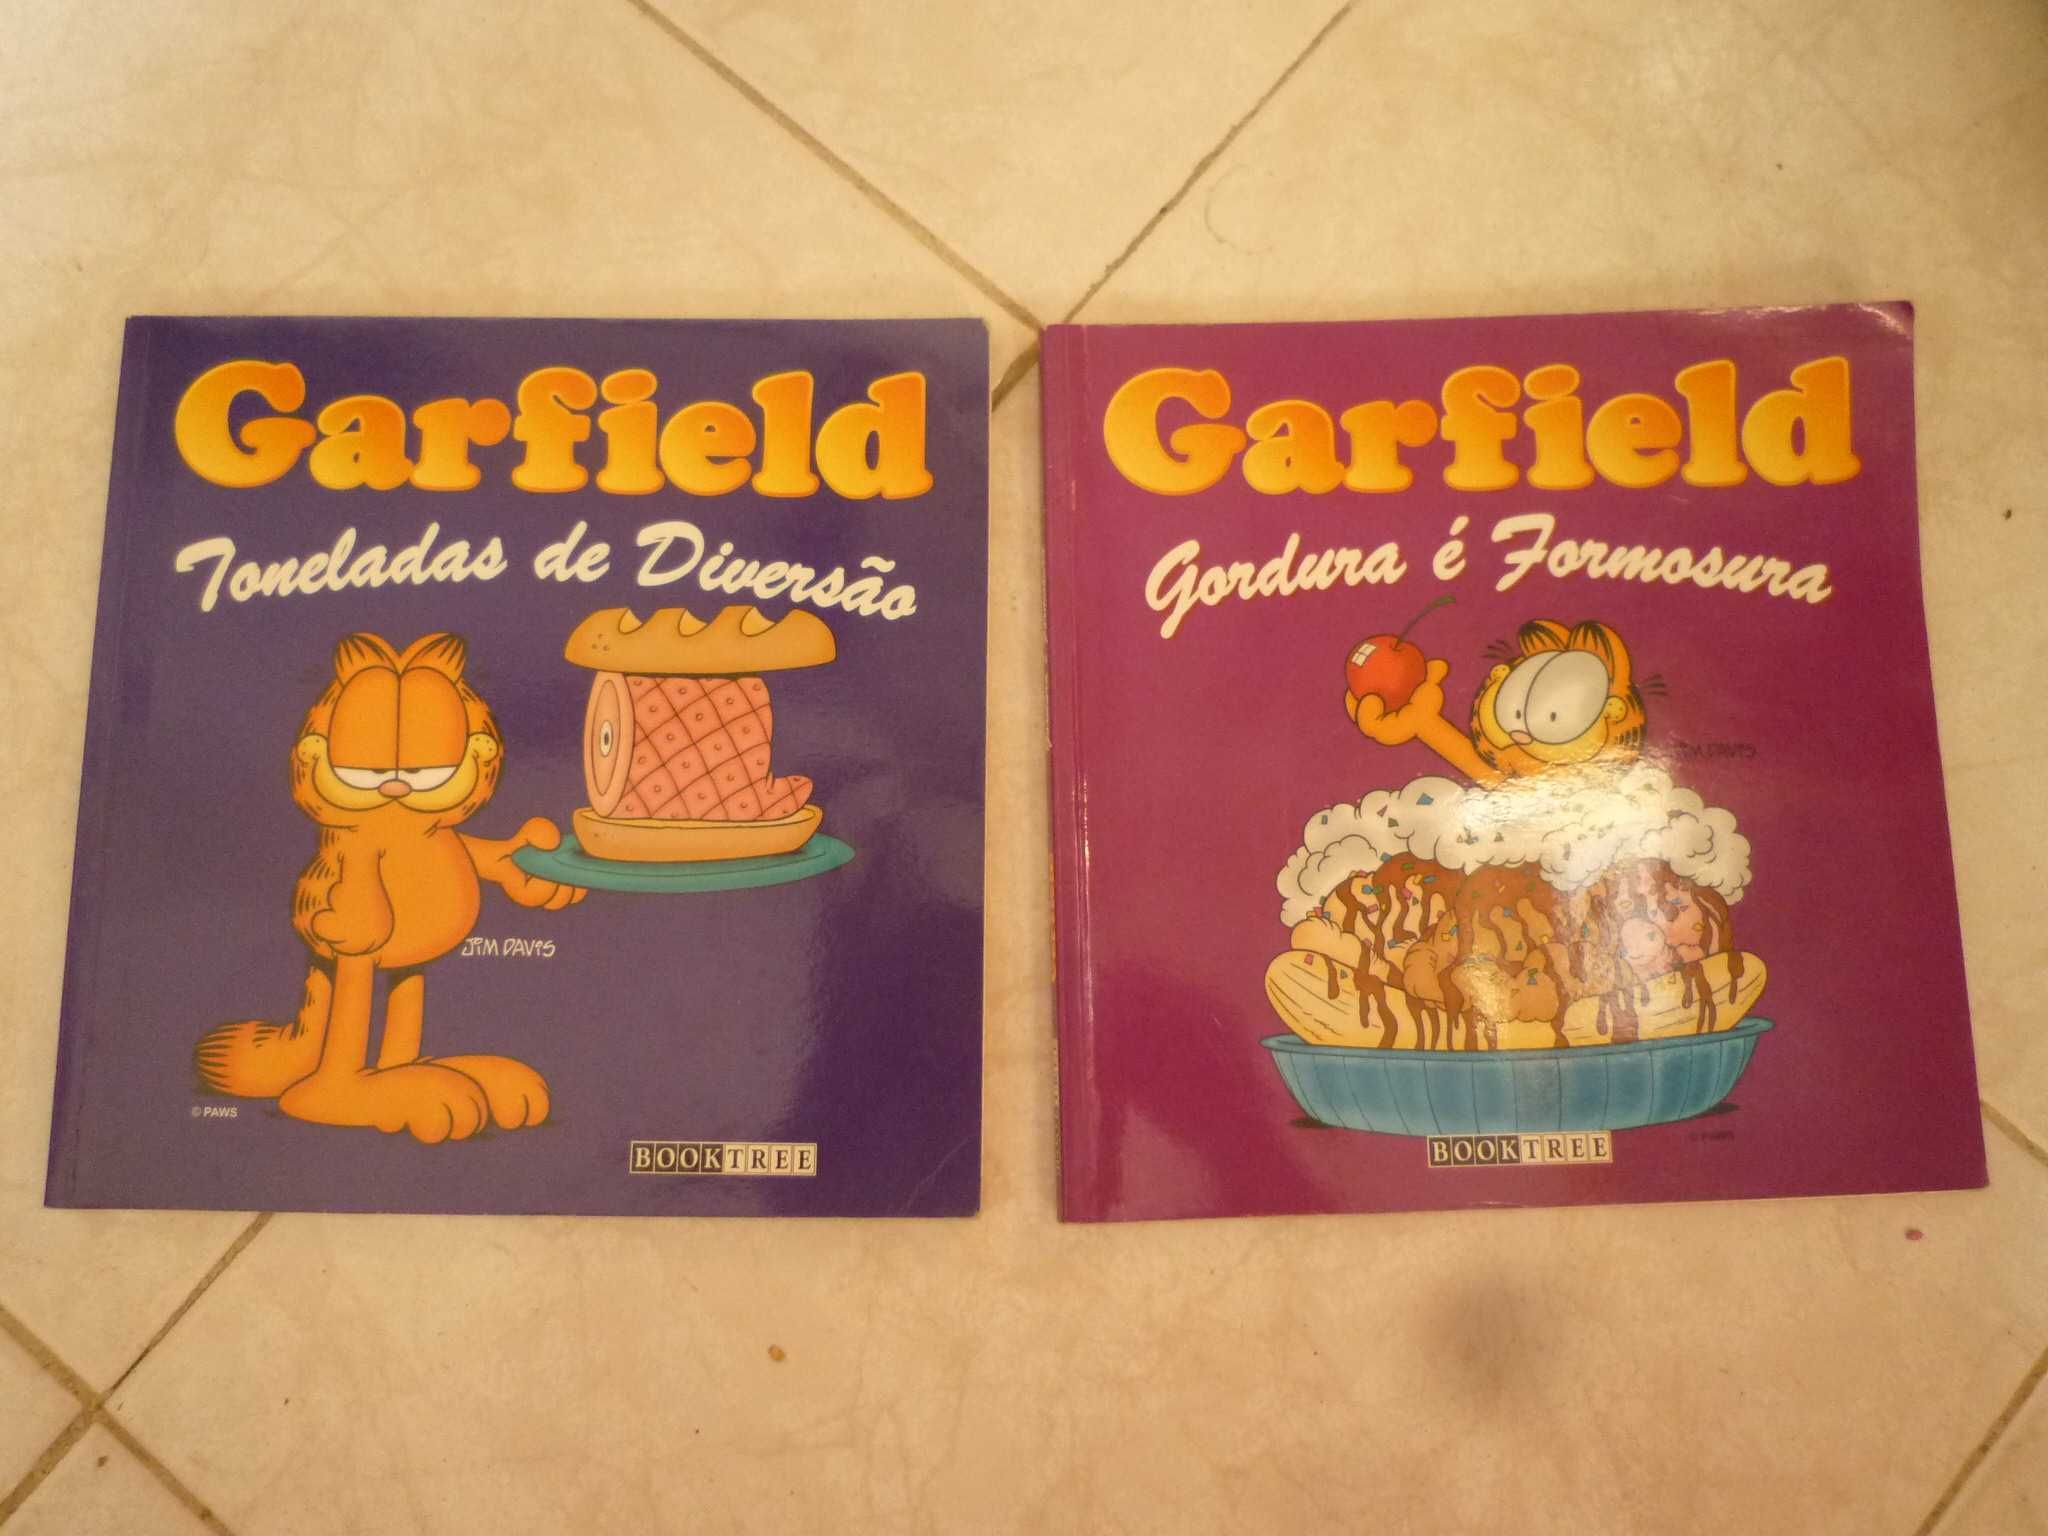 Garfield-Toneladas de Diversão Jim Davis/ Garfield Gordura é Formosura